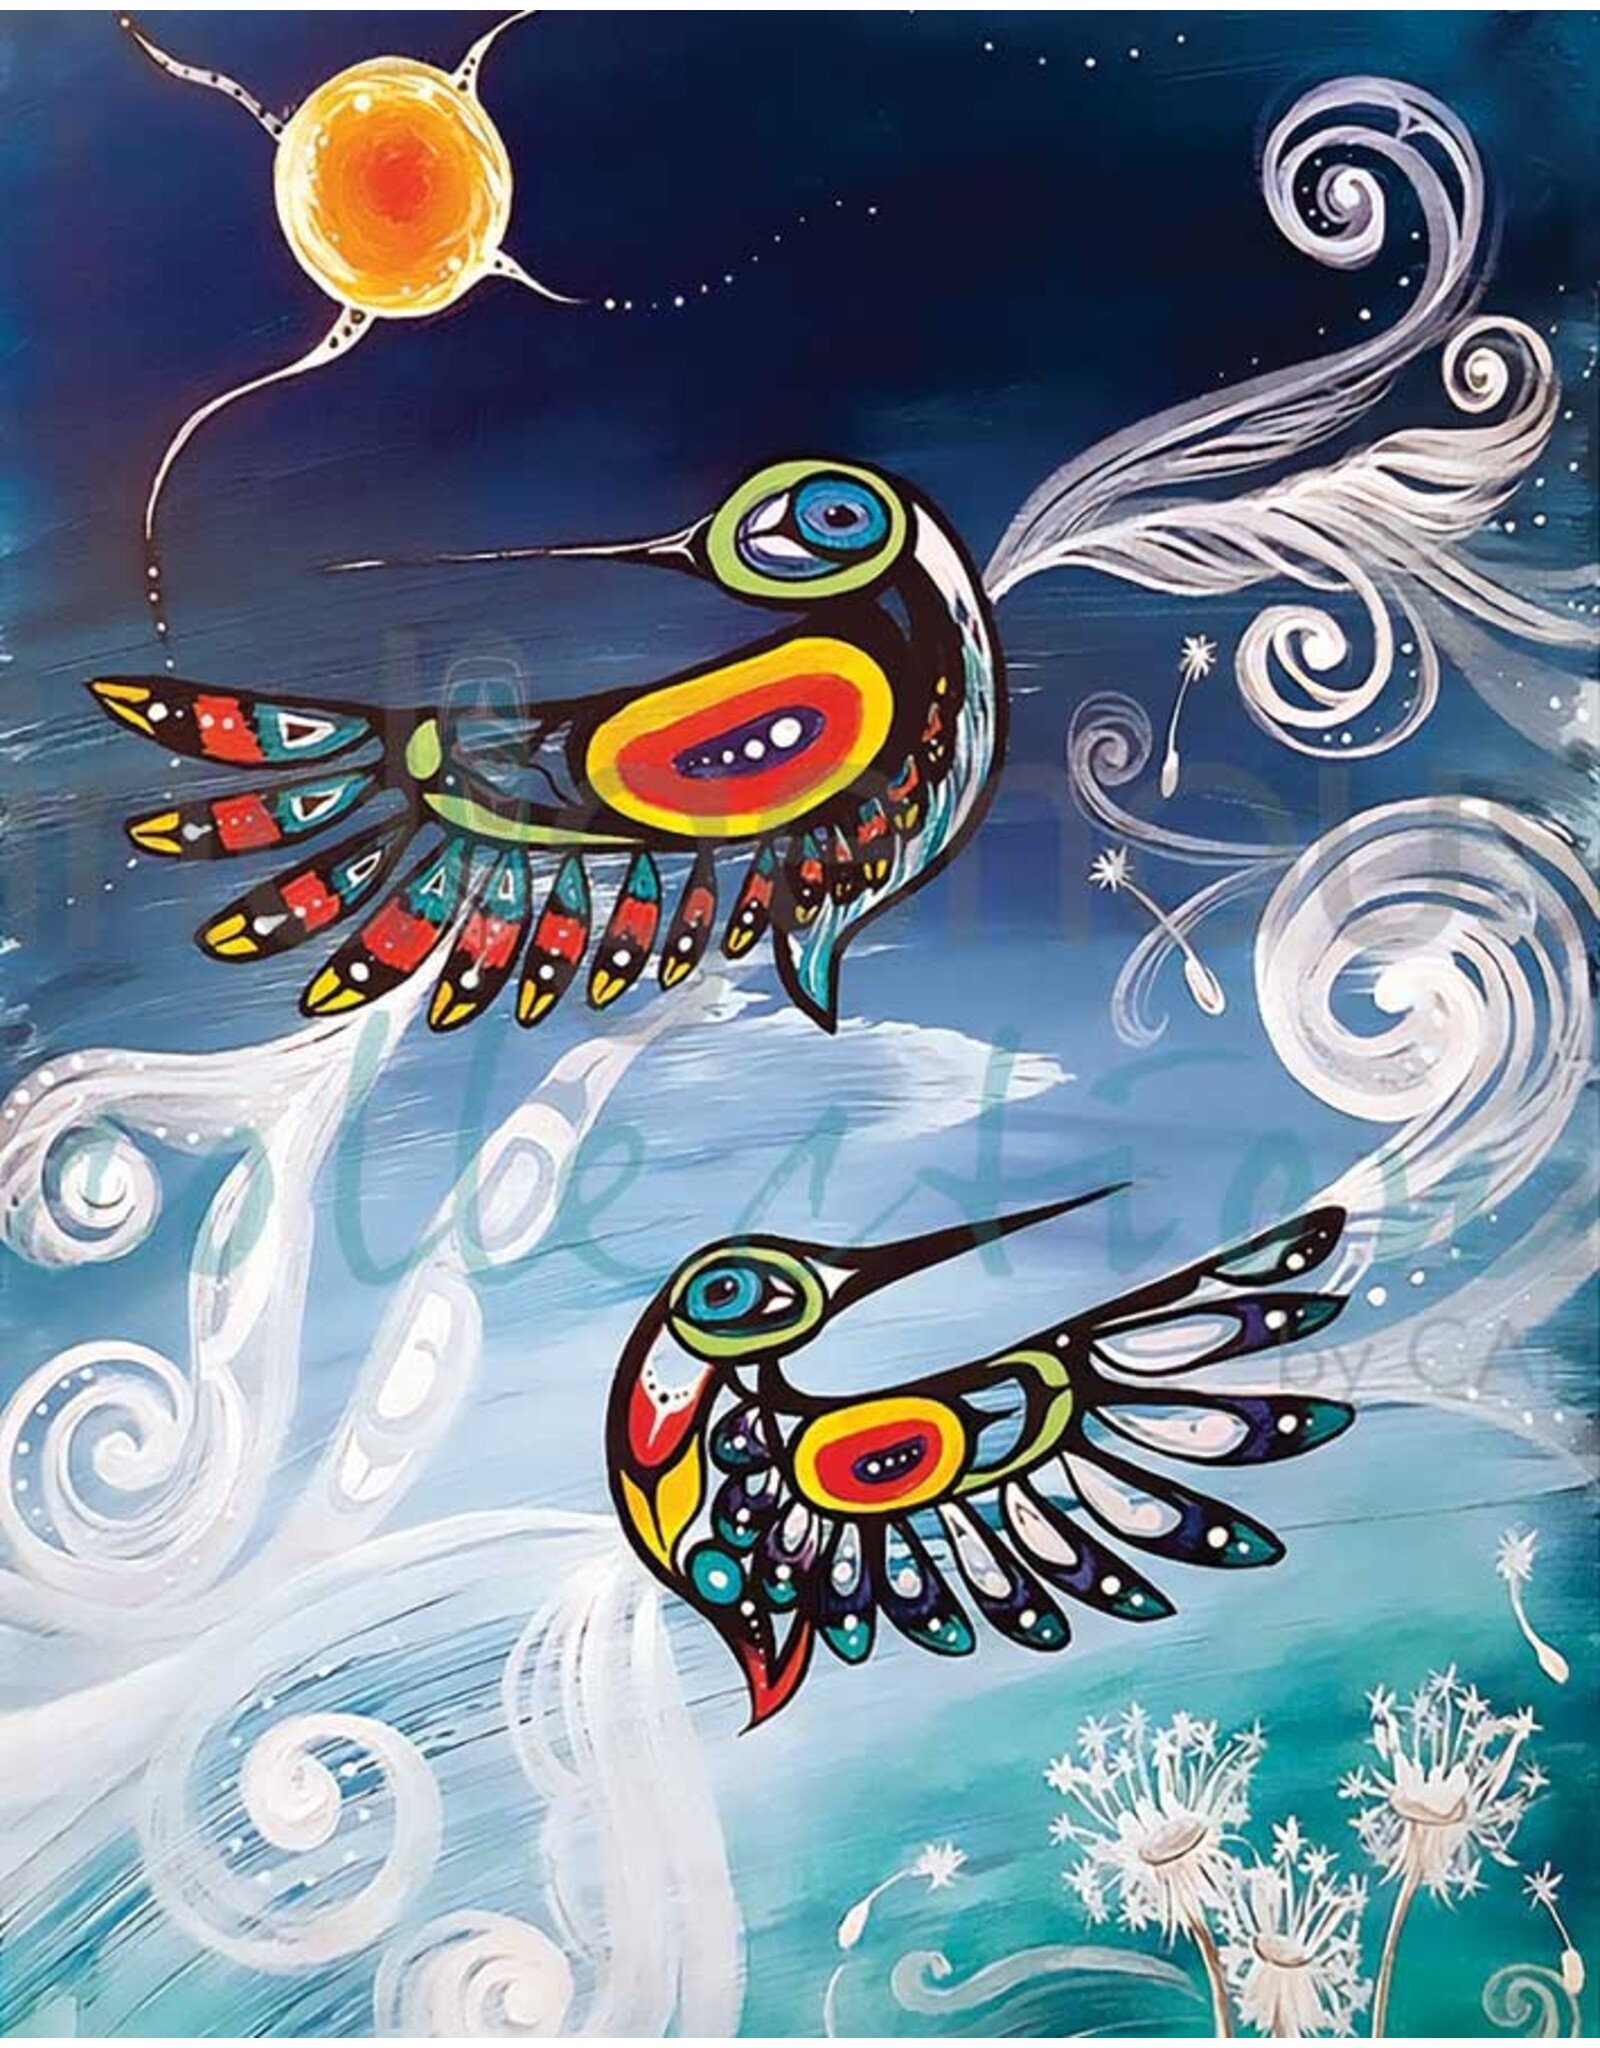 Wispy Birds by Karen Erickson Small Canvas